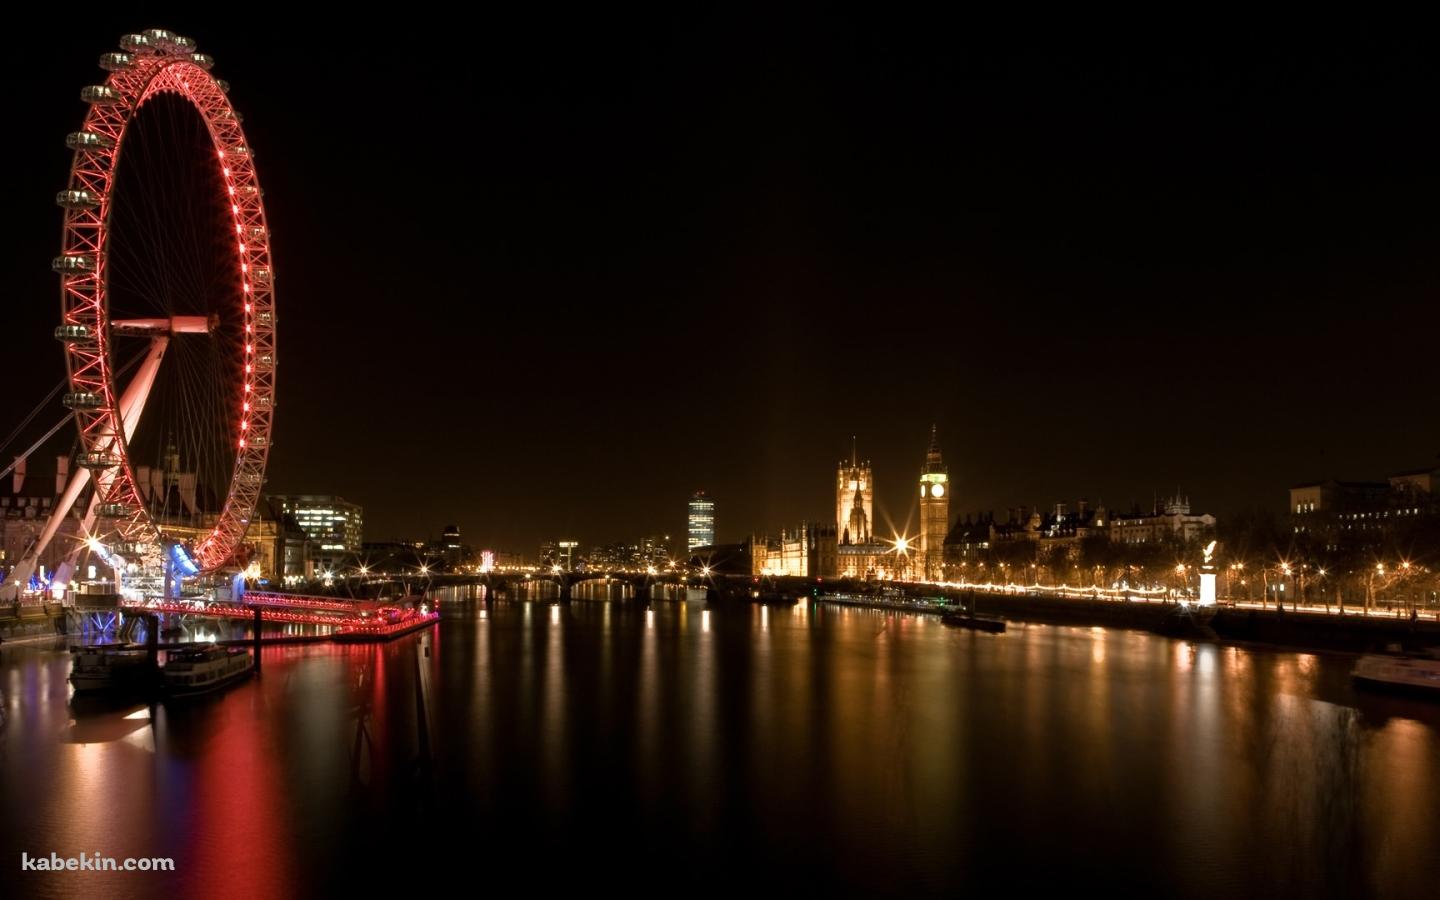 ロンドンの夜景の壁紙(1440px x 900px) 高画質 PC・デスクトップ用